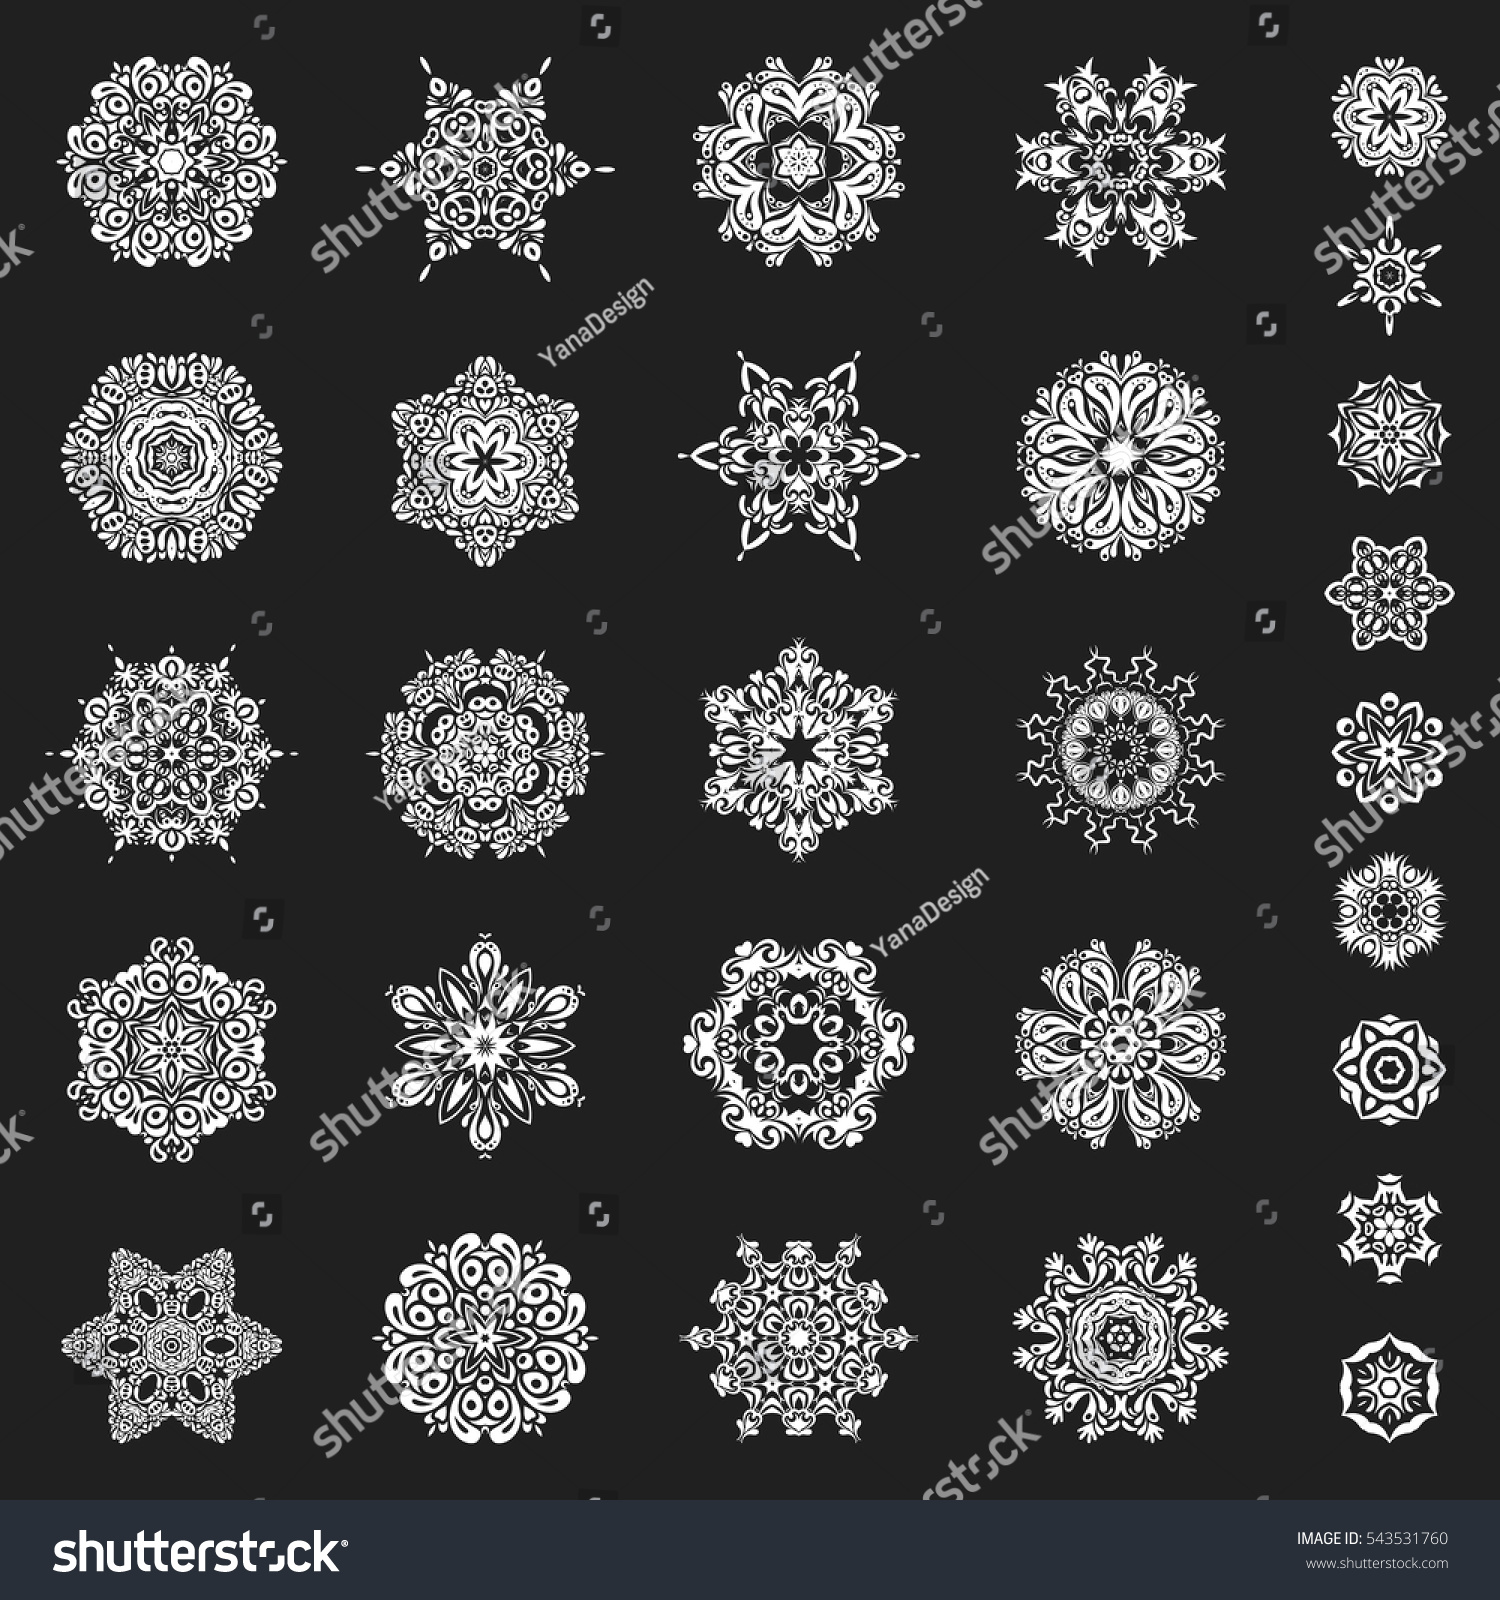 Download Snow Crystal Regular Texture Vector Set Stock Vector ...